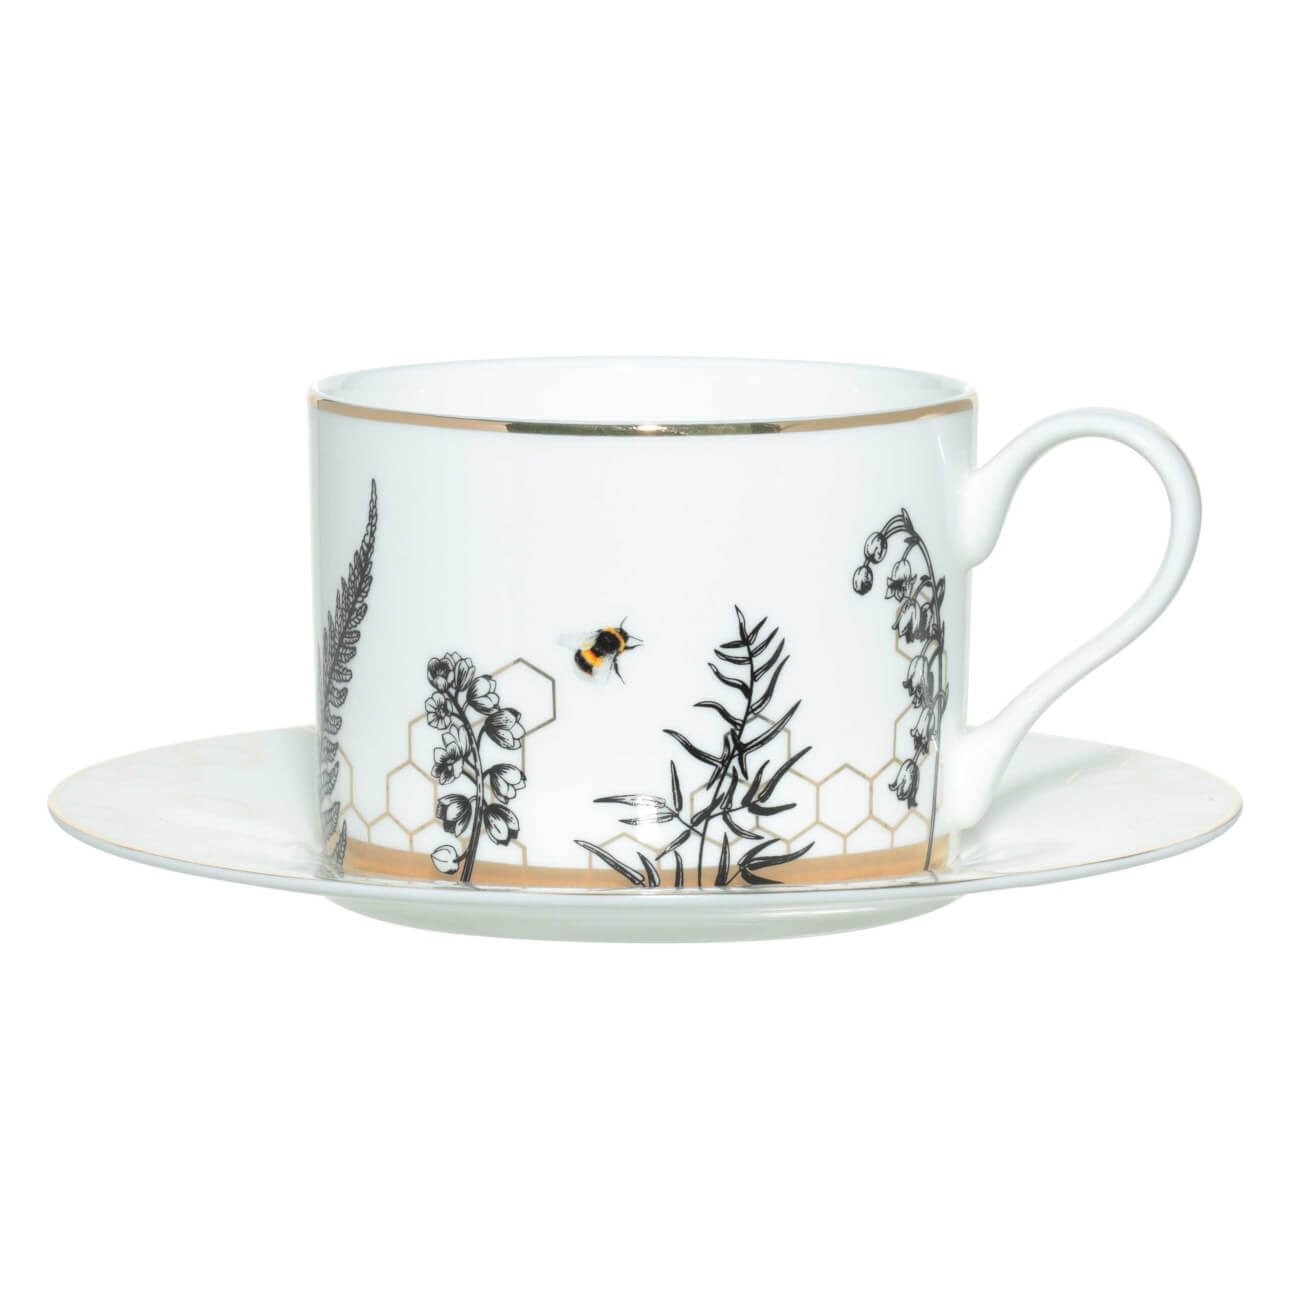 Пара чайная, 1 перс, 2 пр, 350 мл, фарфор F, бело-золотистая, Пчелы и соты, Honey чайная чашка ангел фарфор серебро